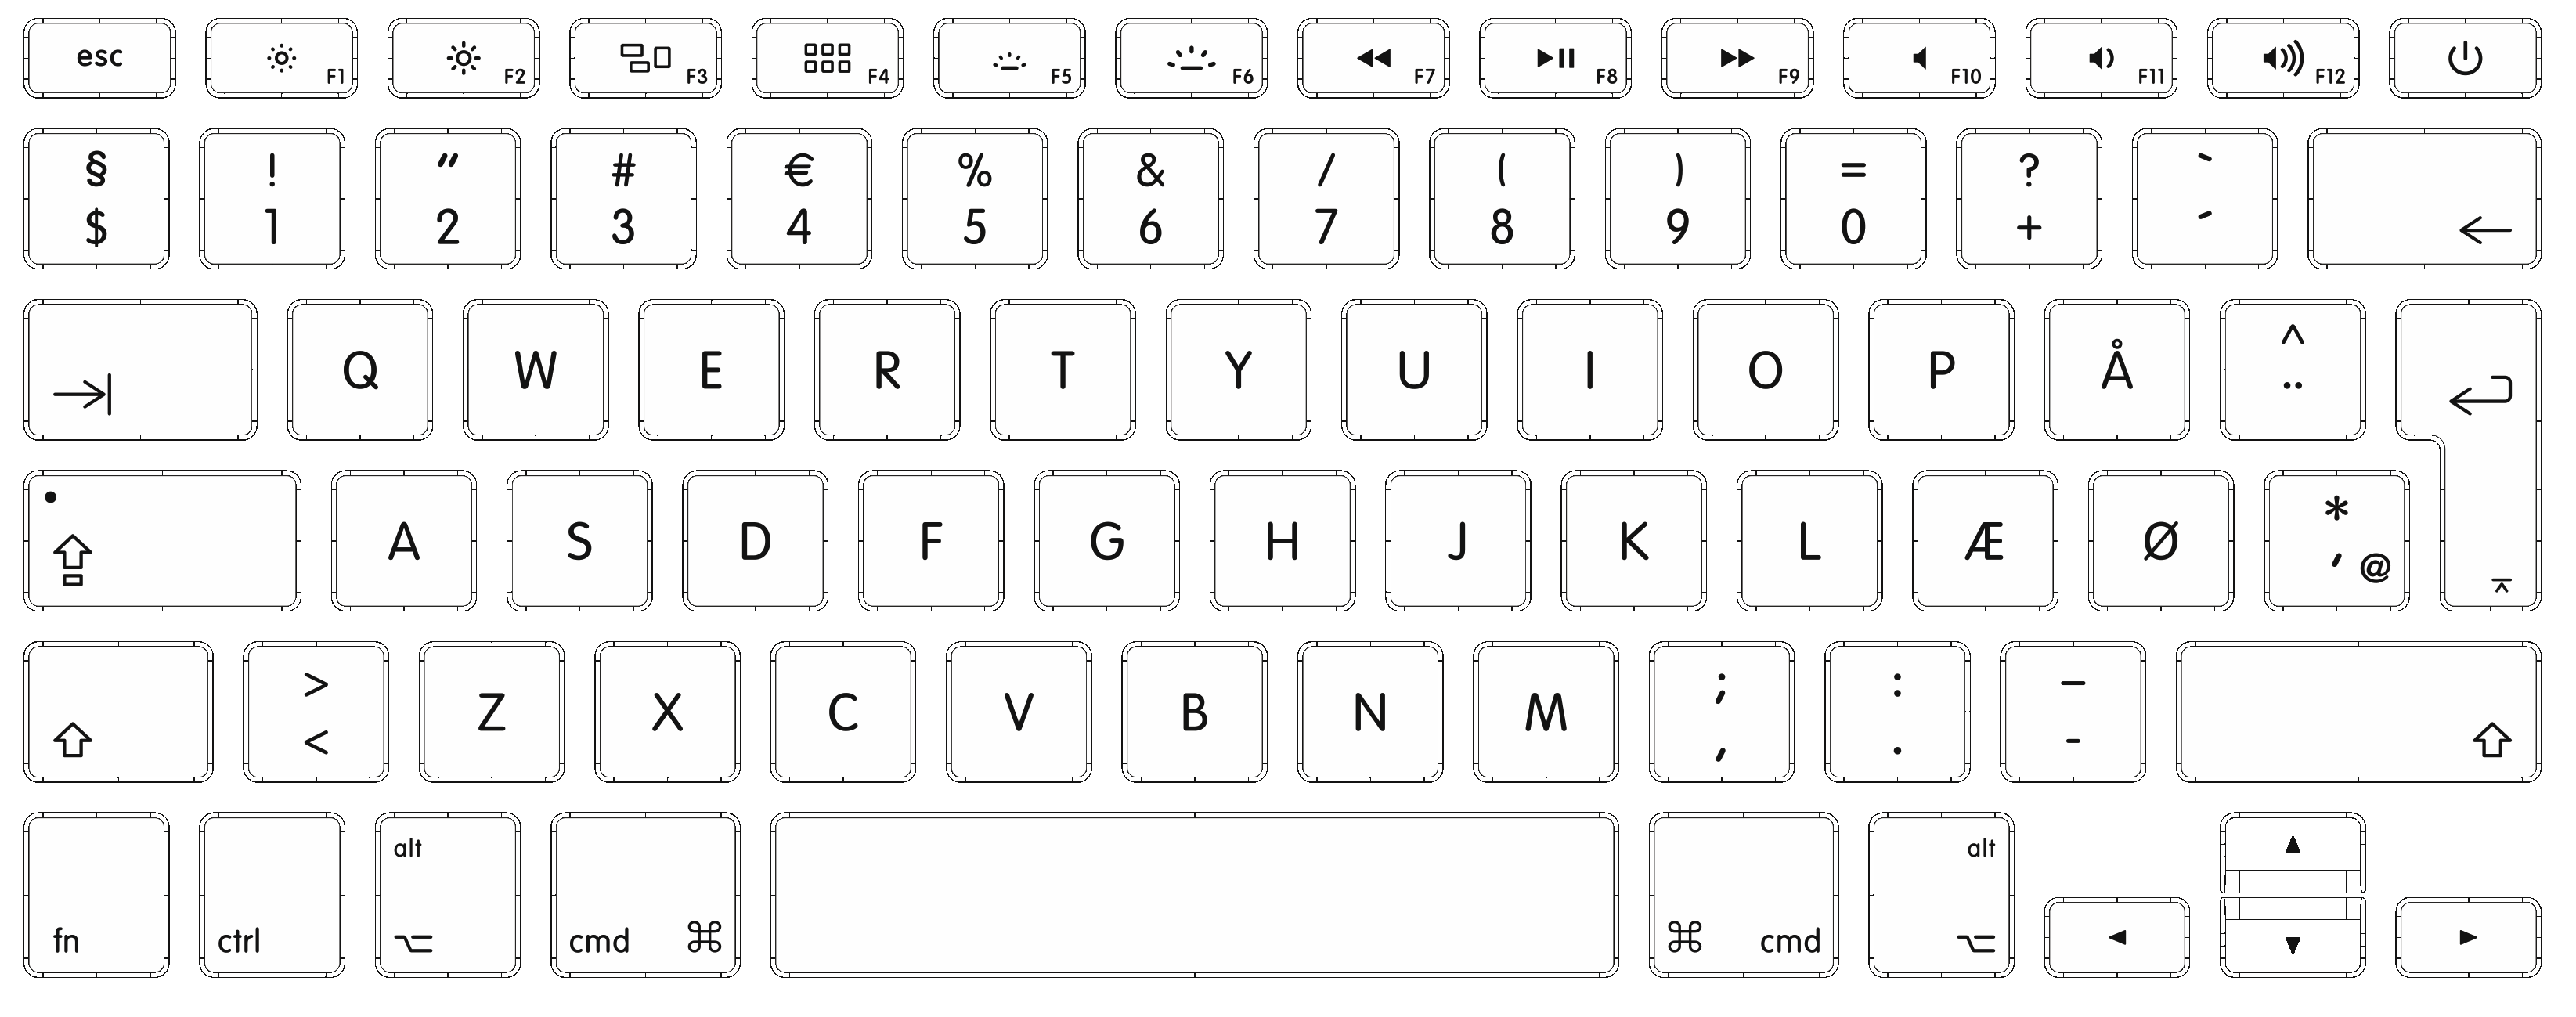 Apple Danish Keyboard Layout